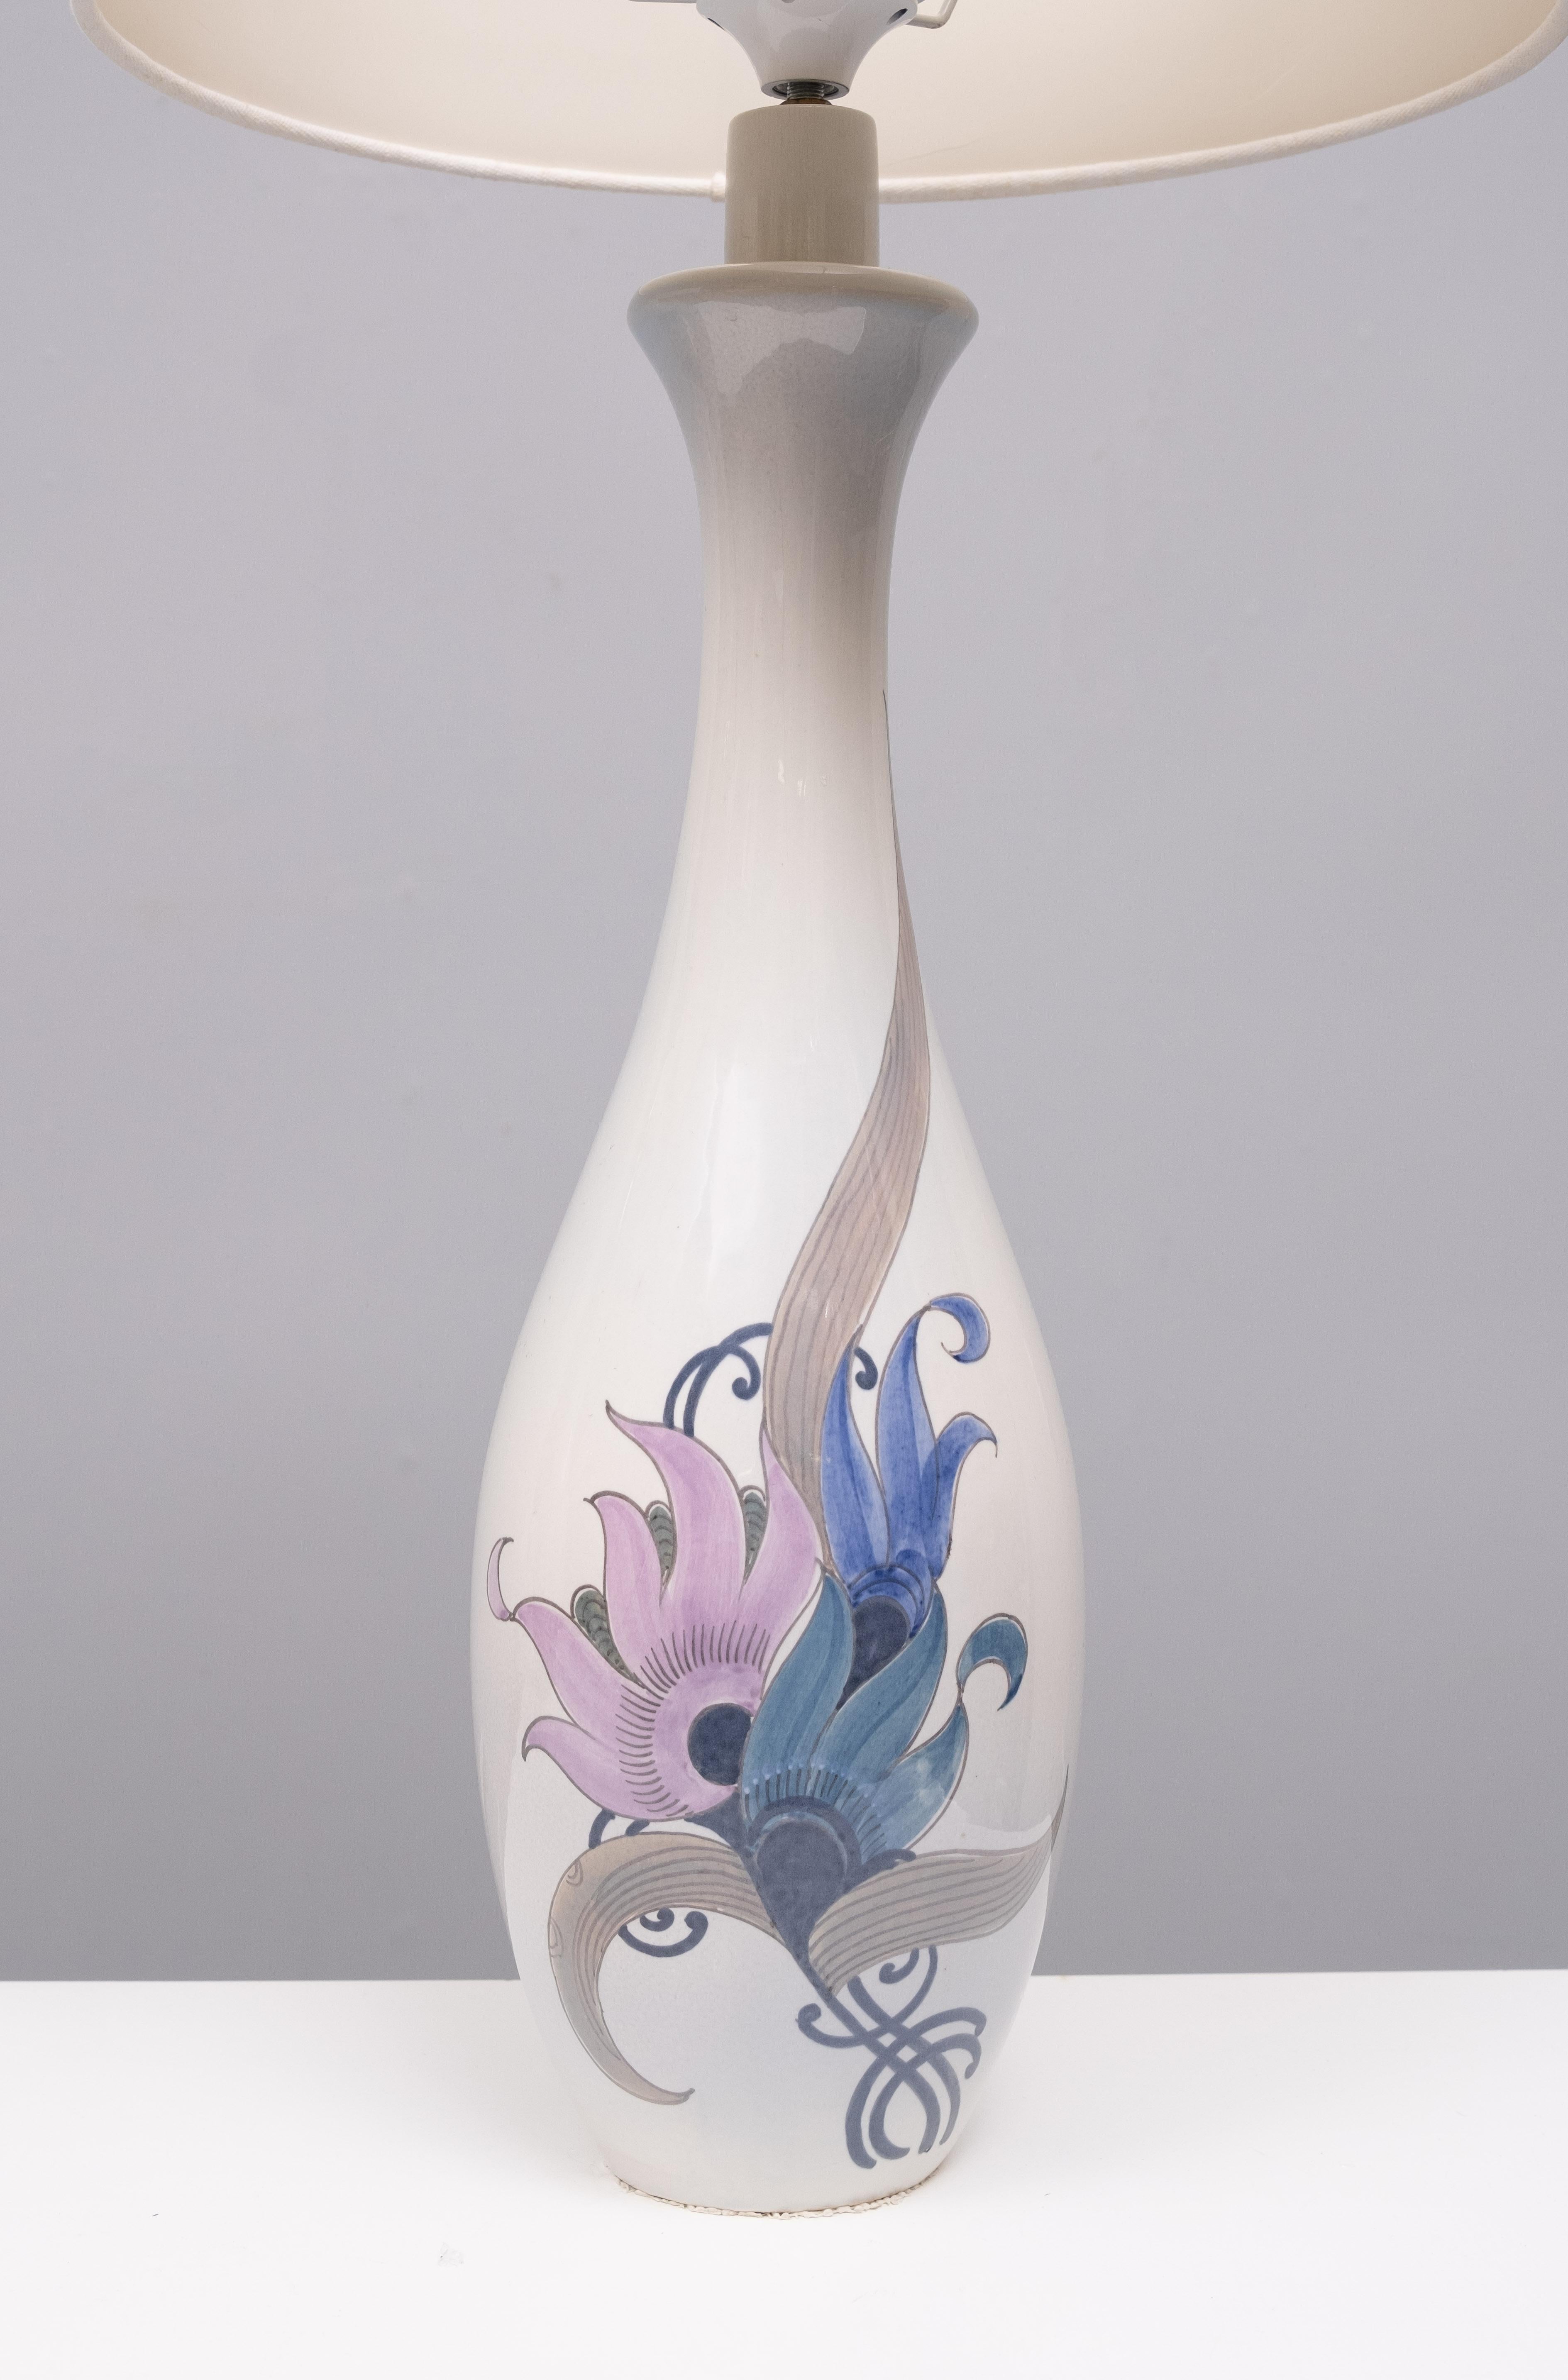 Sehr schönes elegantes Paar Keramik-Tischlampen, handbemalte Blumen.
Grundfarbe Hellblau . Einzigartiger seltener Satz, signiert. Schoonhoven Holland 

